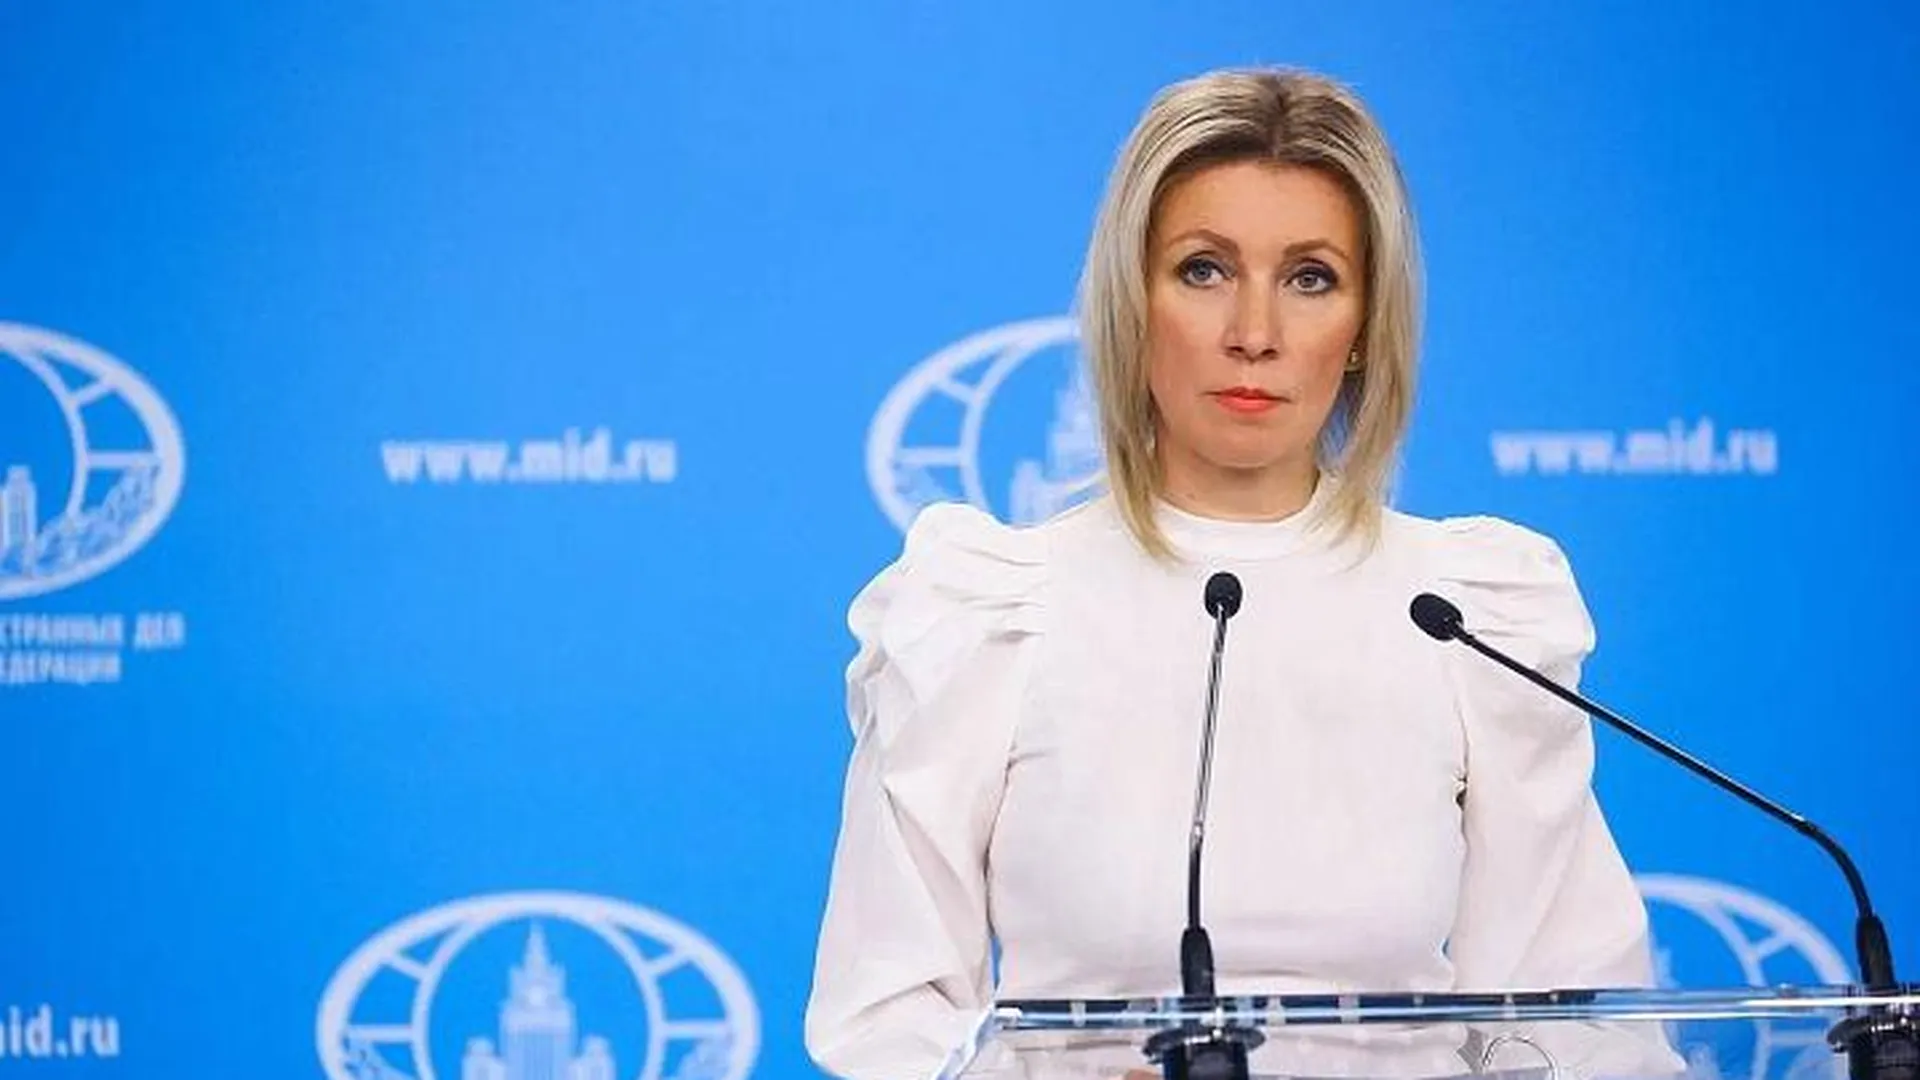 Захарова прокомментировала заявление МИДа Германии об указании должности Путина